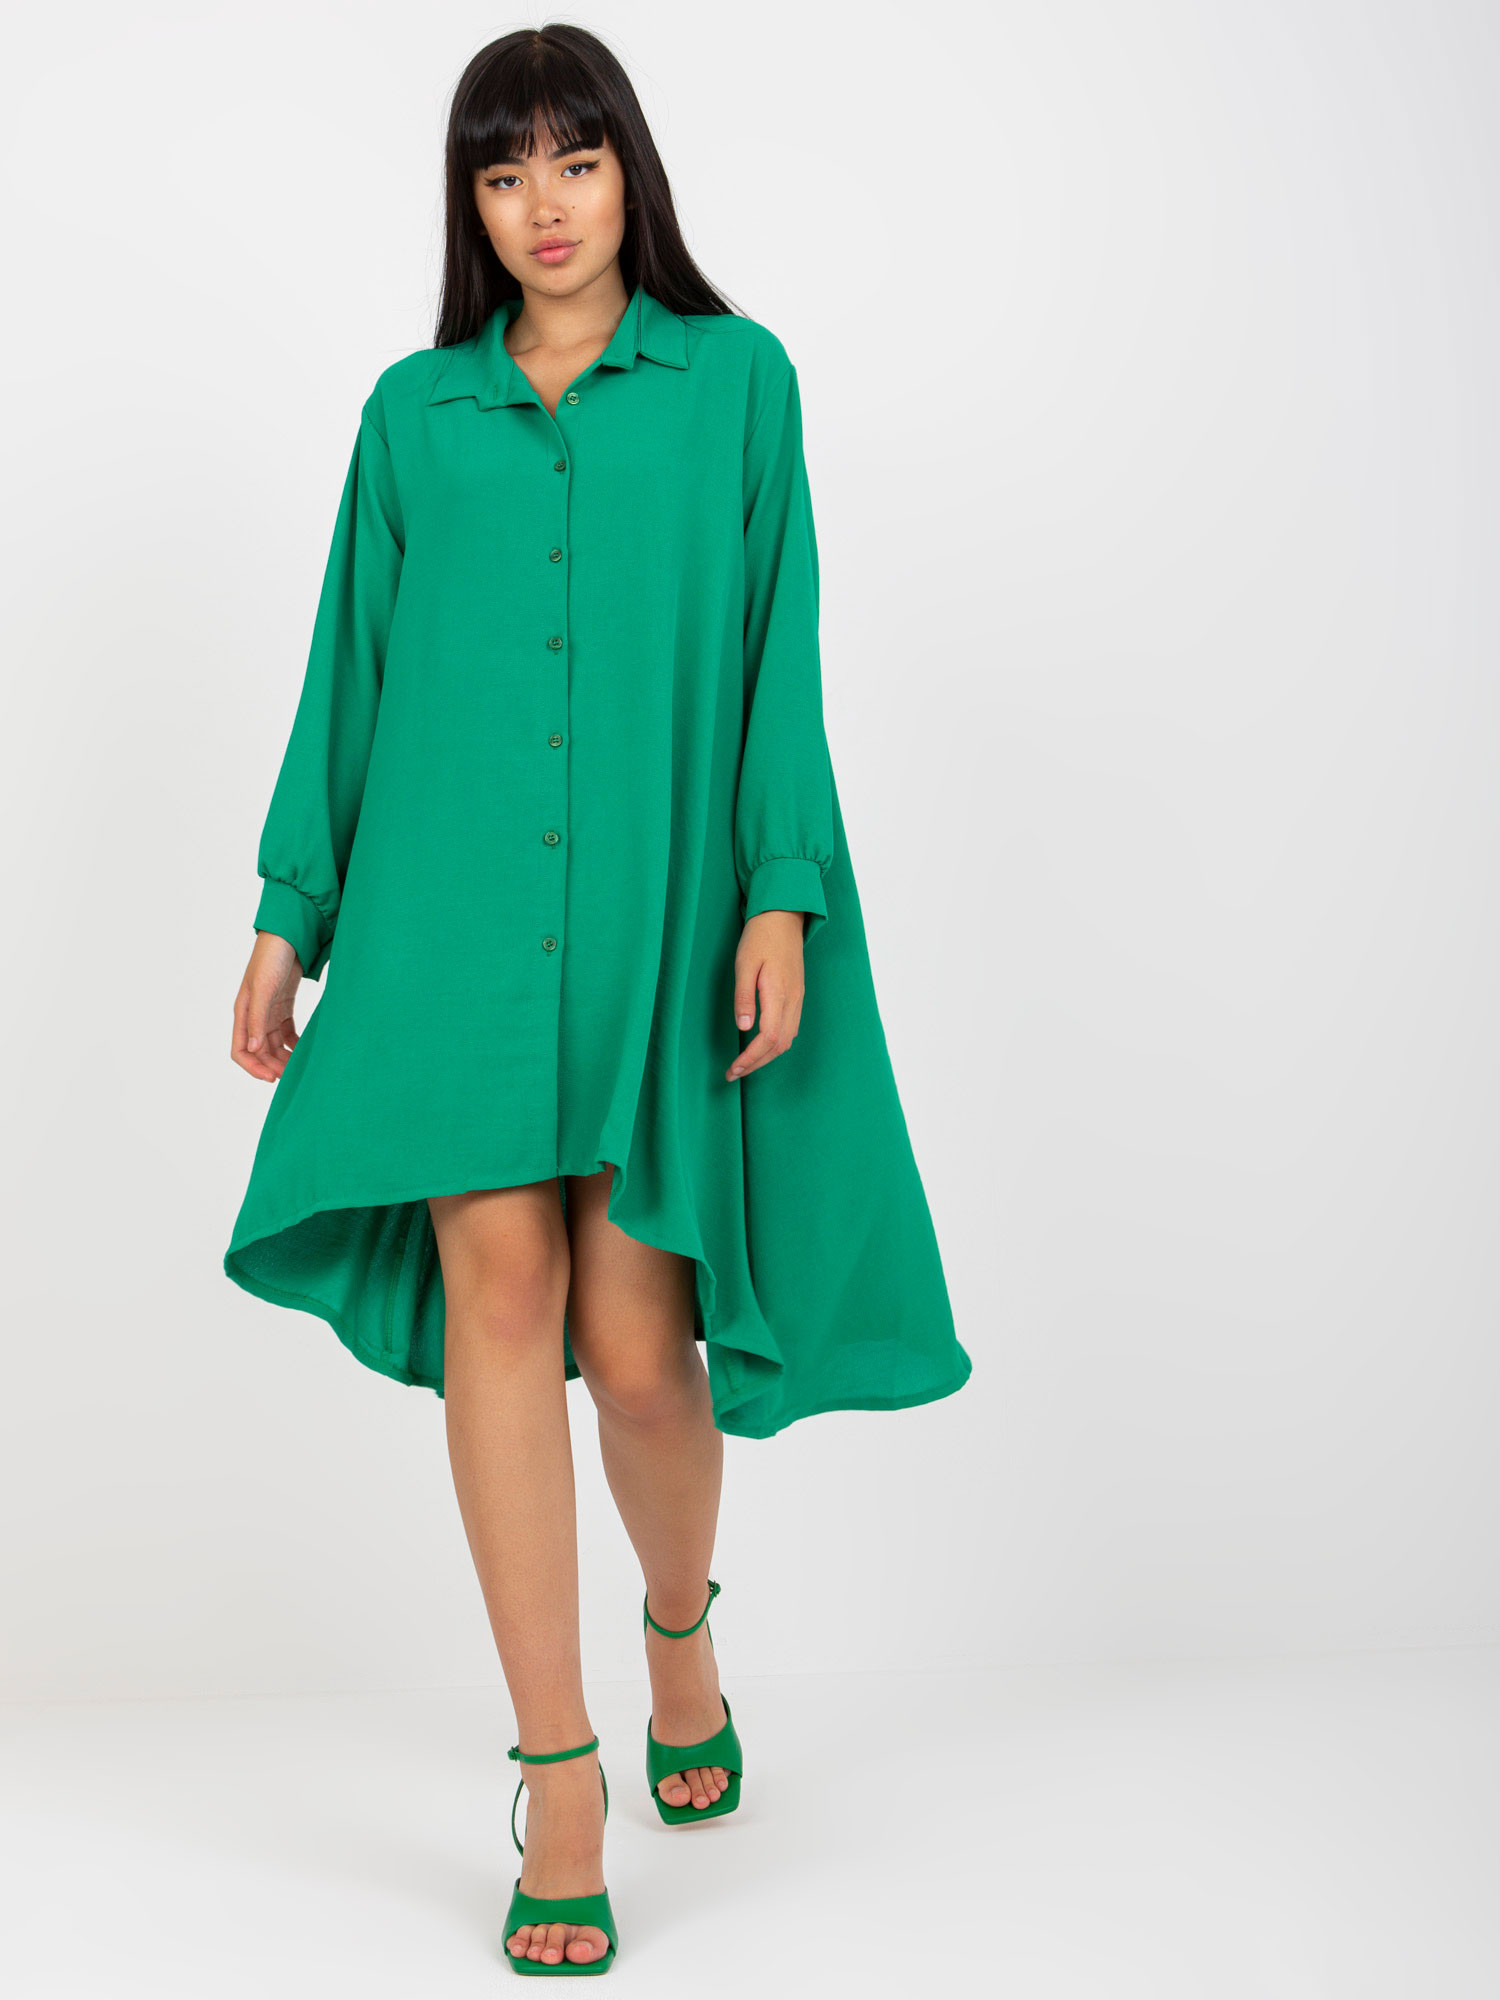 Dámské šaty DHJ SK 15092 zelené jedna velikost